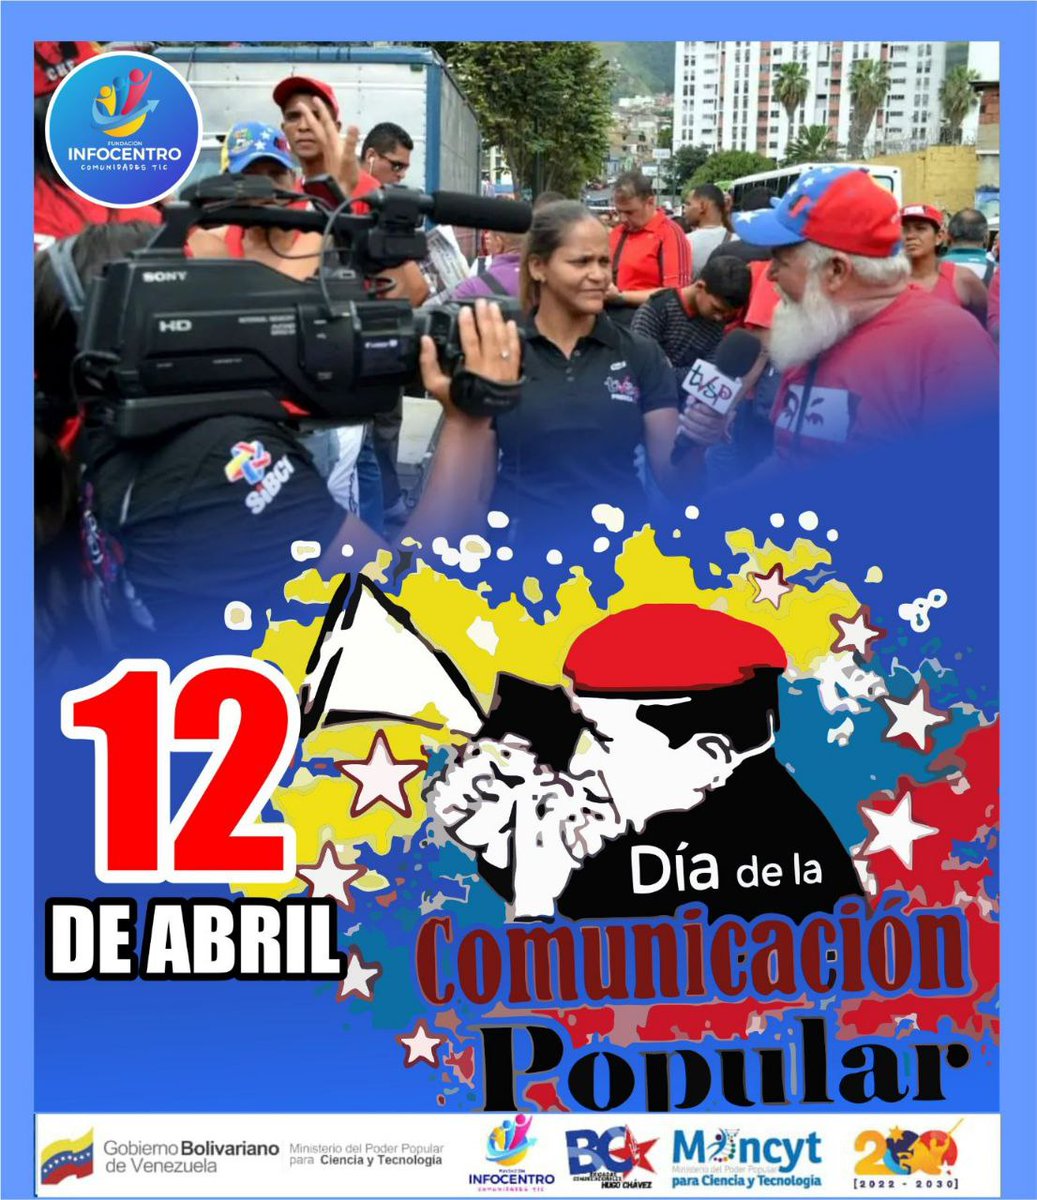 Honramos la memoria de los caídos durante el golpe de estado de 2002 y seguimos defendiendo las conquistas de la Revolución Bolivariana.
!El legado de Chávez vive!
#PuebloComunicador
#Infocentro
@larosainfove
@gabrielasjr
@Carmen_Vzla 
@NicolasMaduro
@Mincyt_Ve 
@infocentrofal_